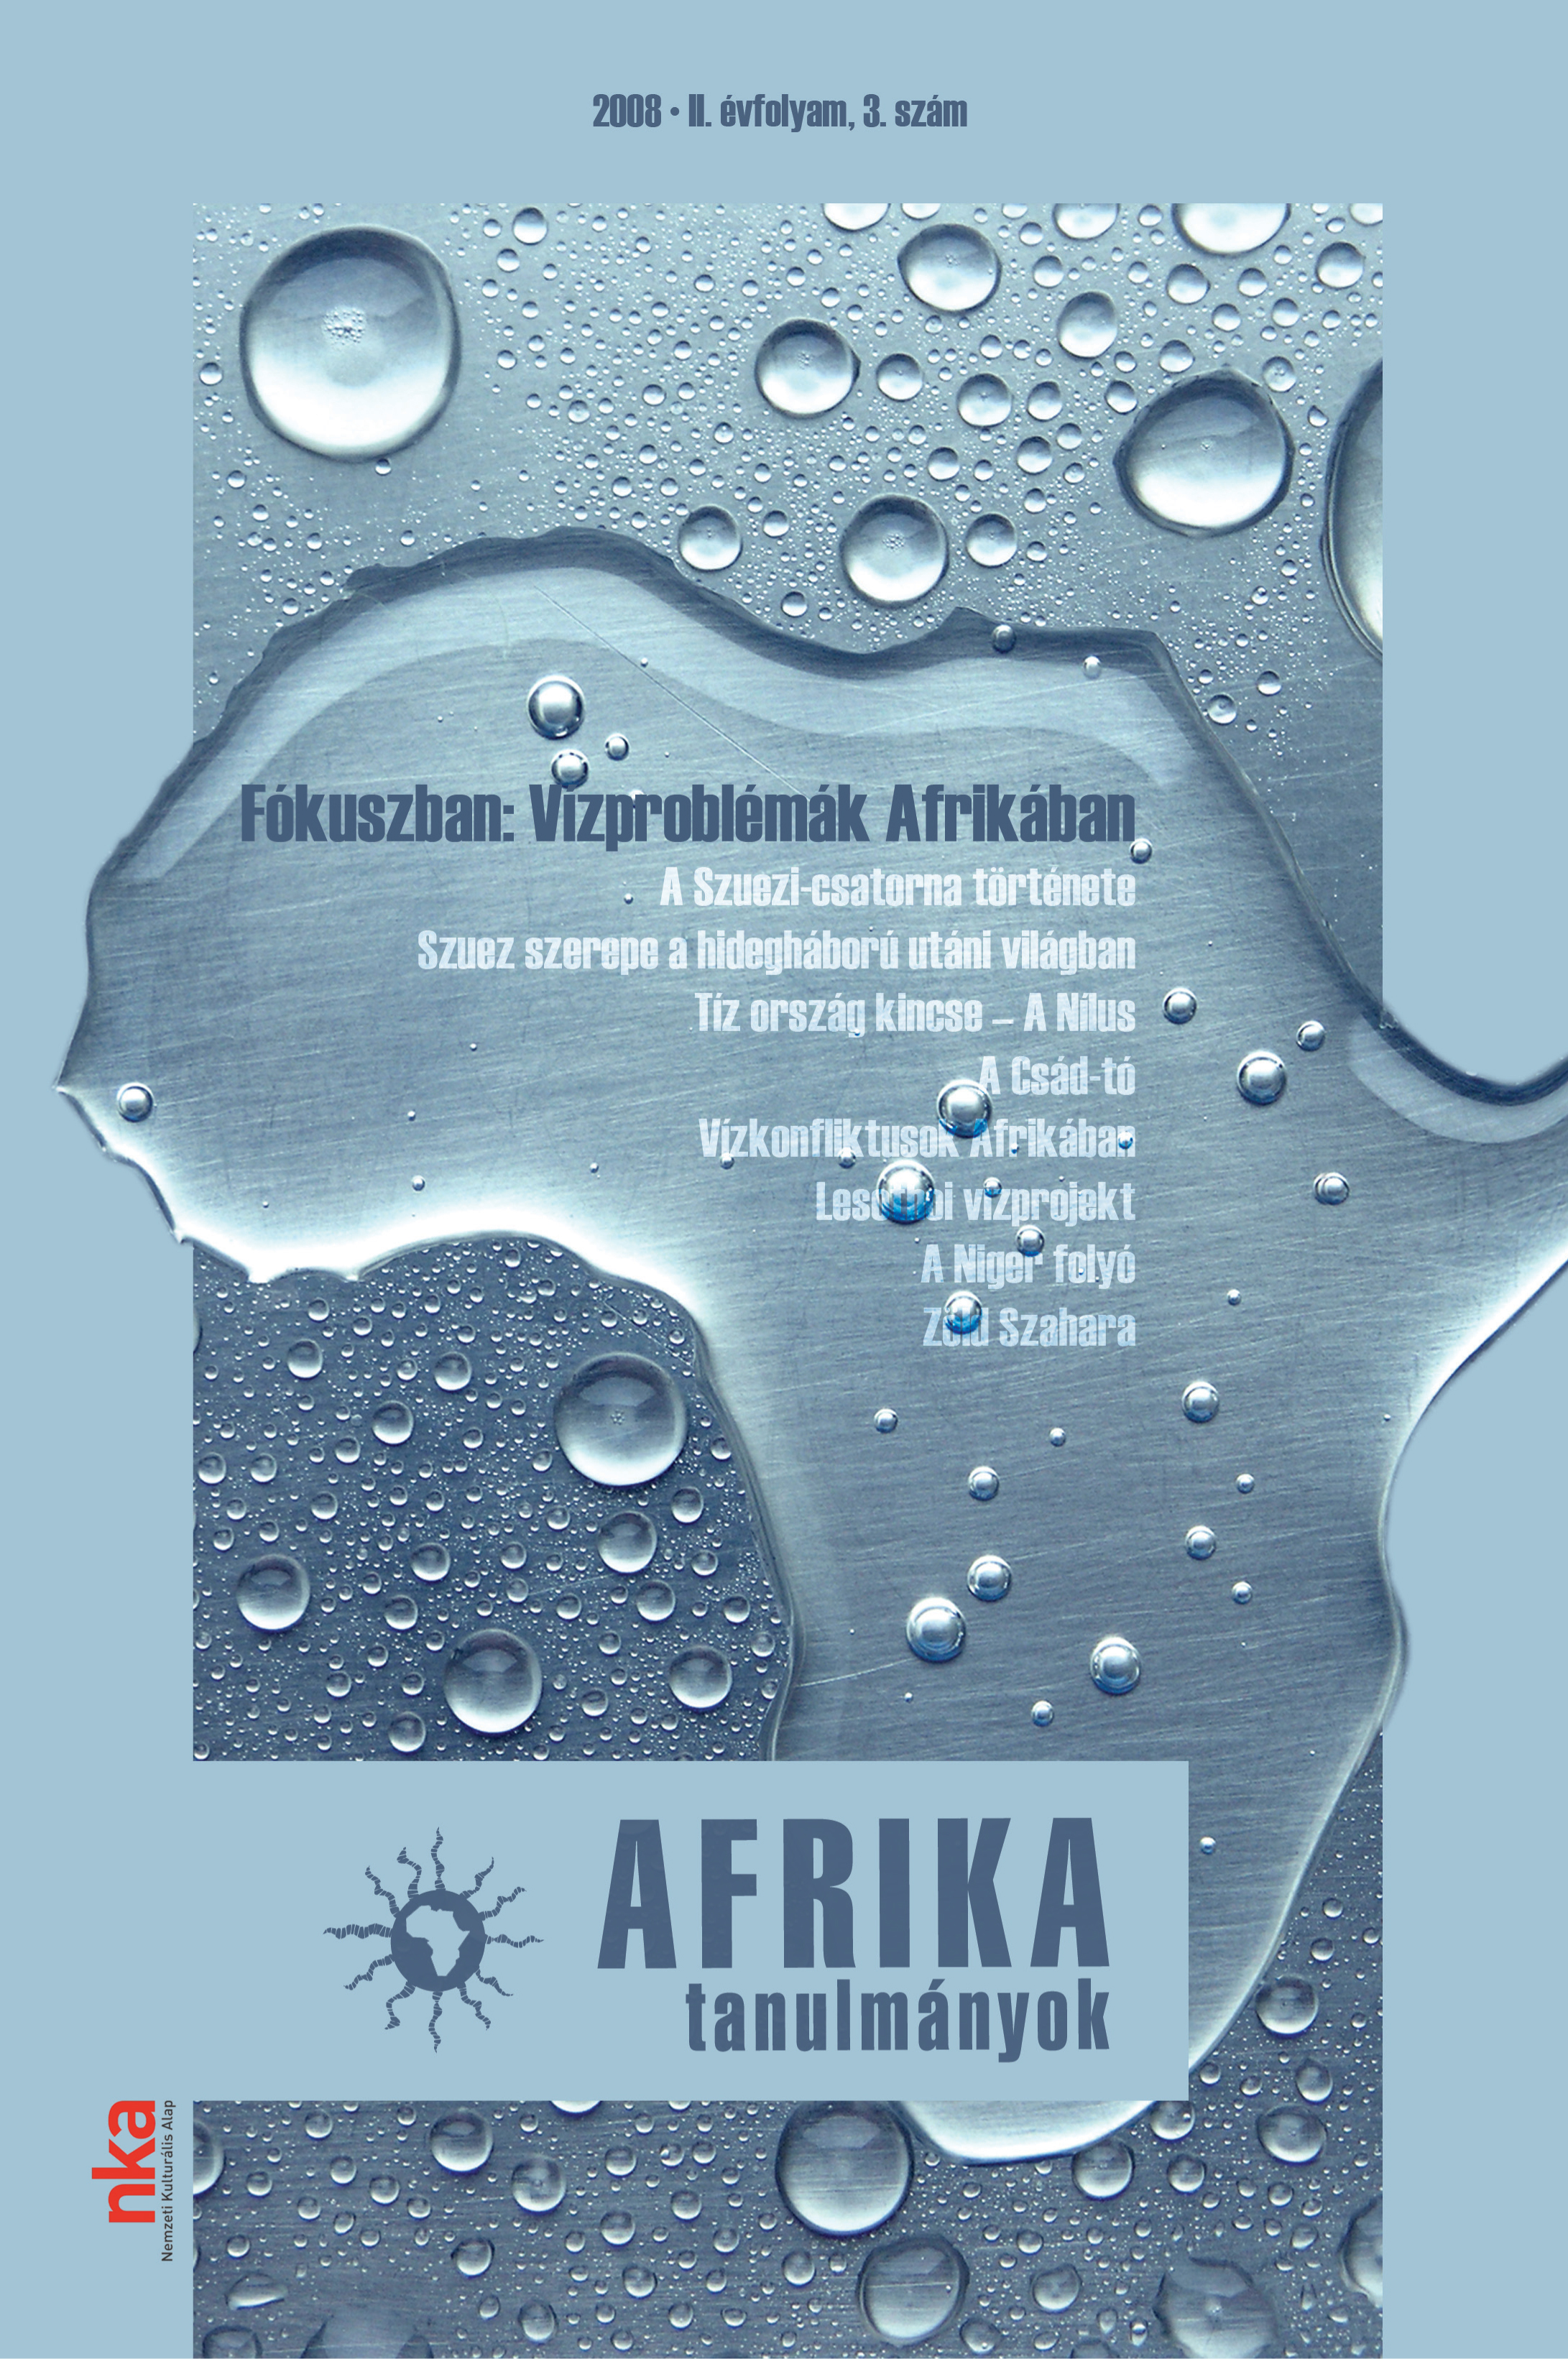 					View Évf. 2 szám 3 (2008): Fókuszban: Vízproblémák Afrikában
				